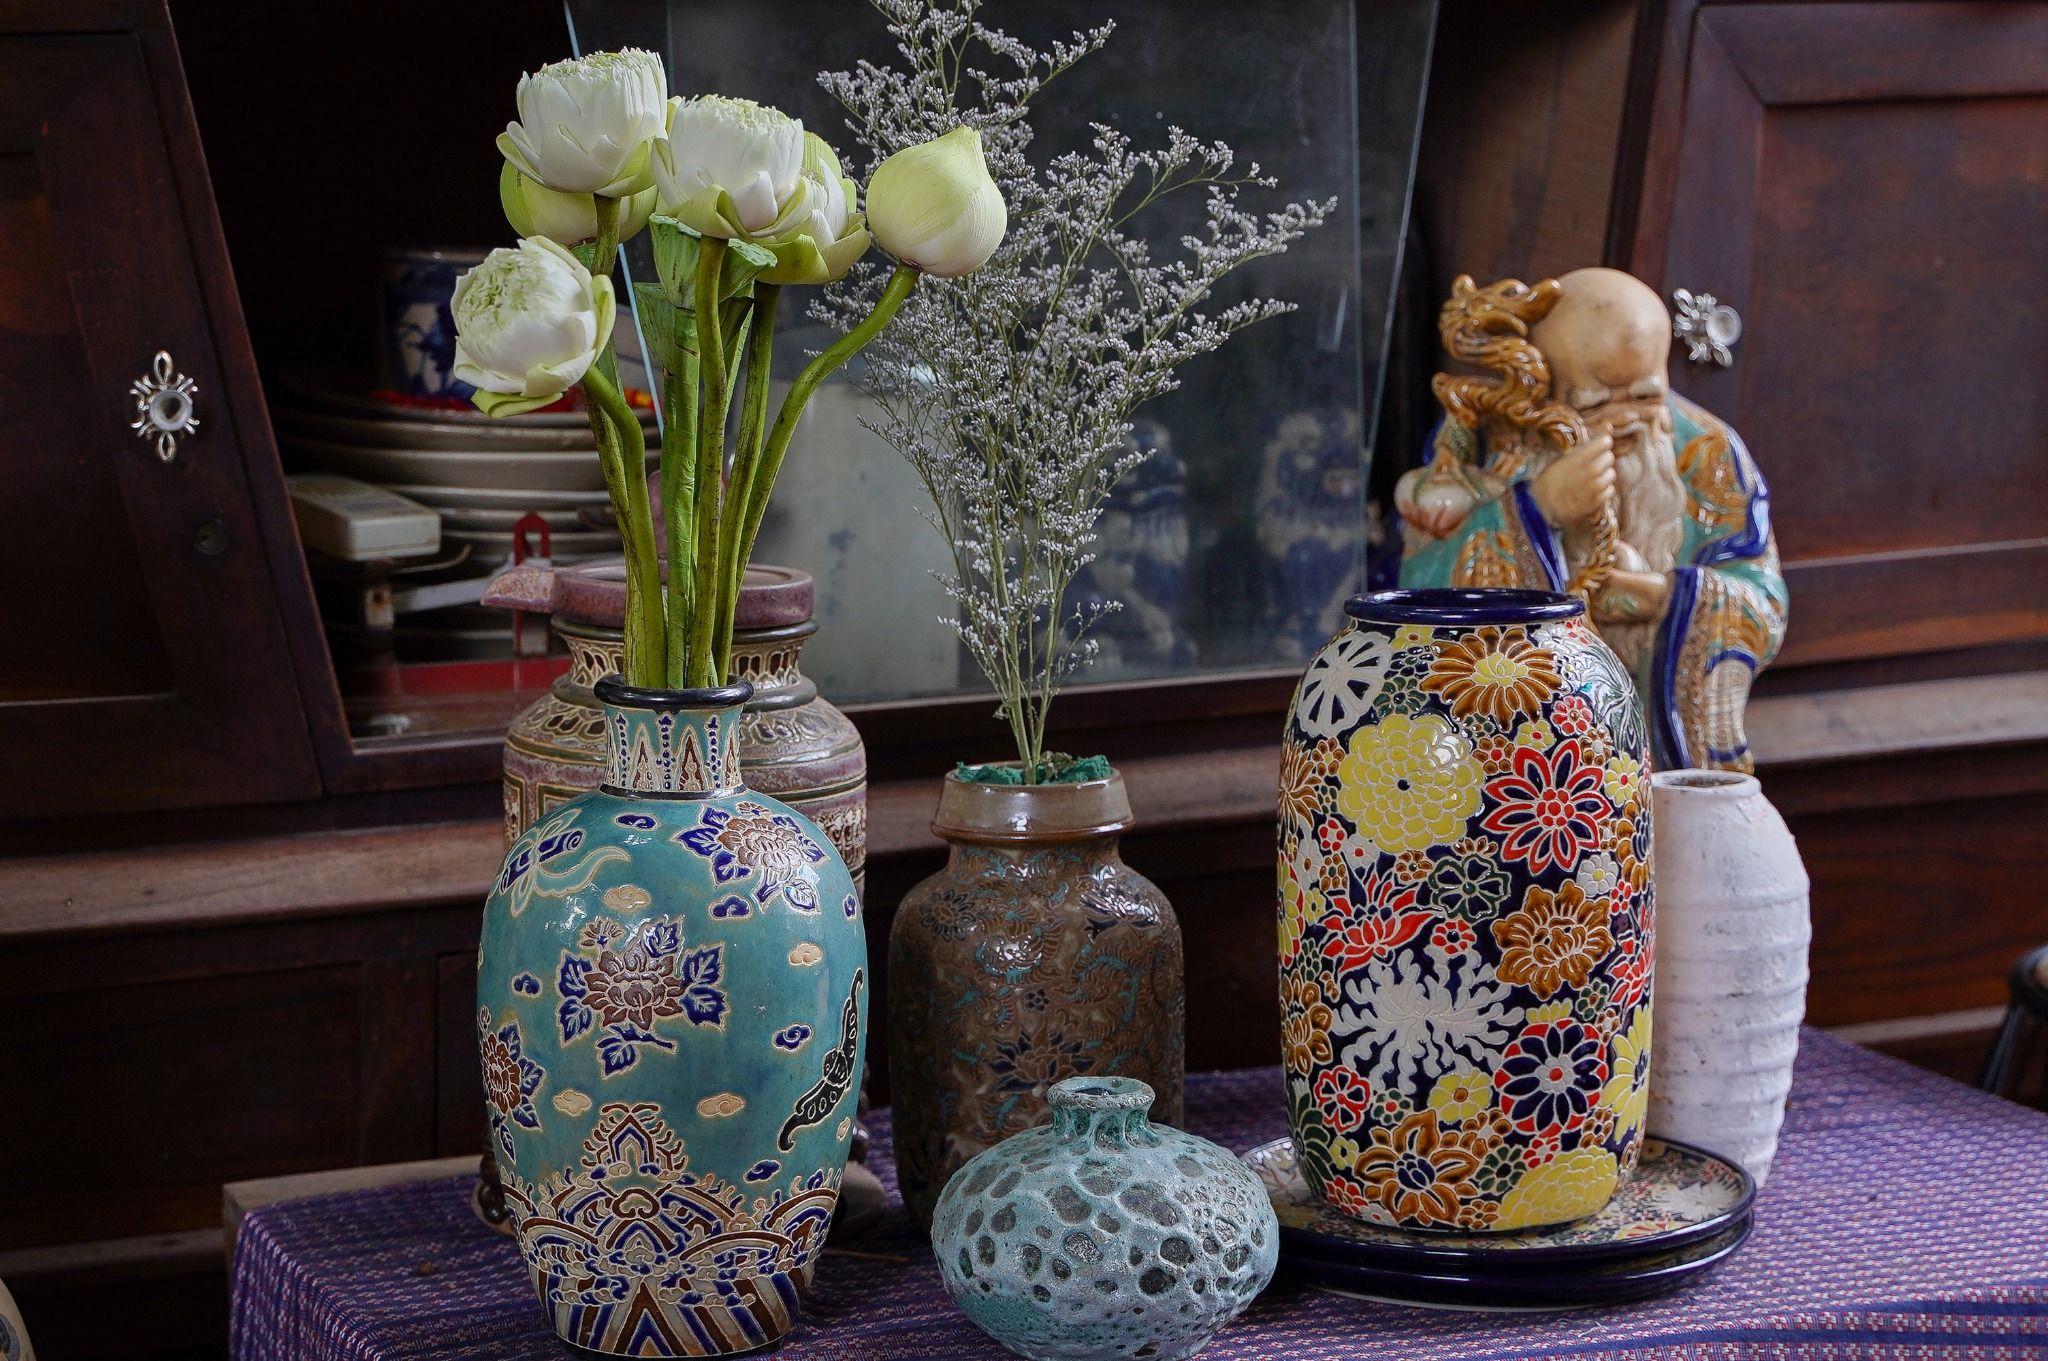  Bộ 2 bình vuốt tay khắc thủ công hoa văn Cổ Phục Việt, men xanh đồng, gốm Thủ Biên 